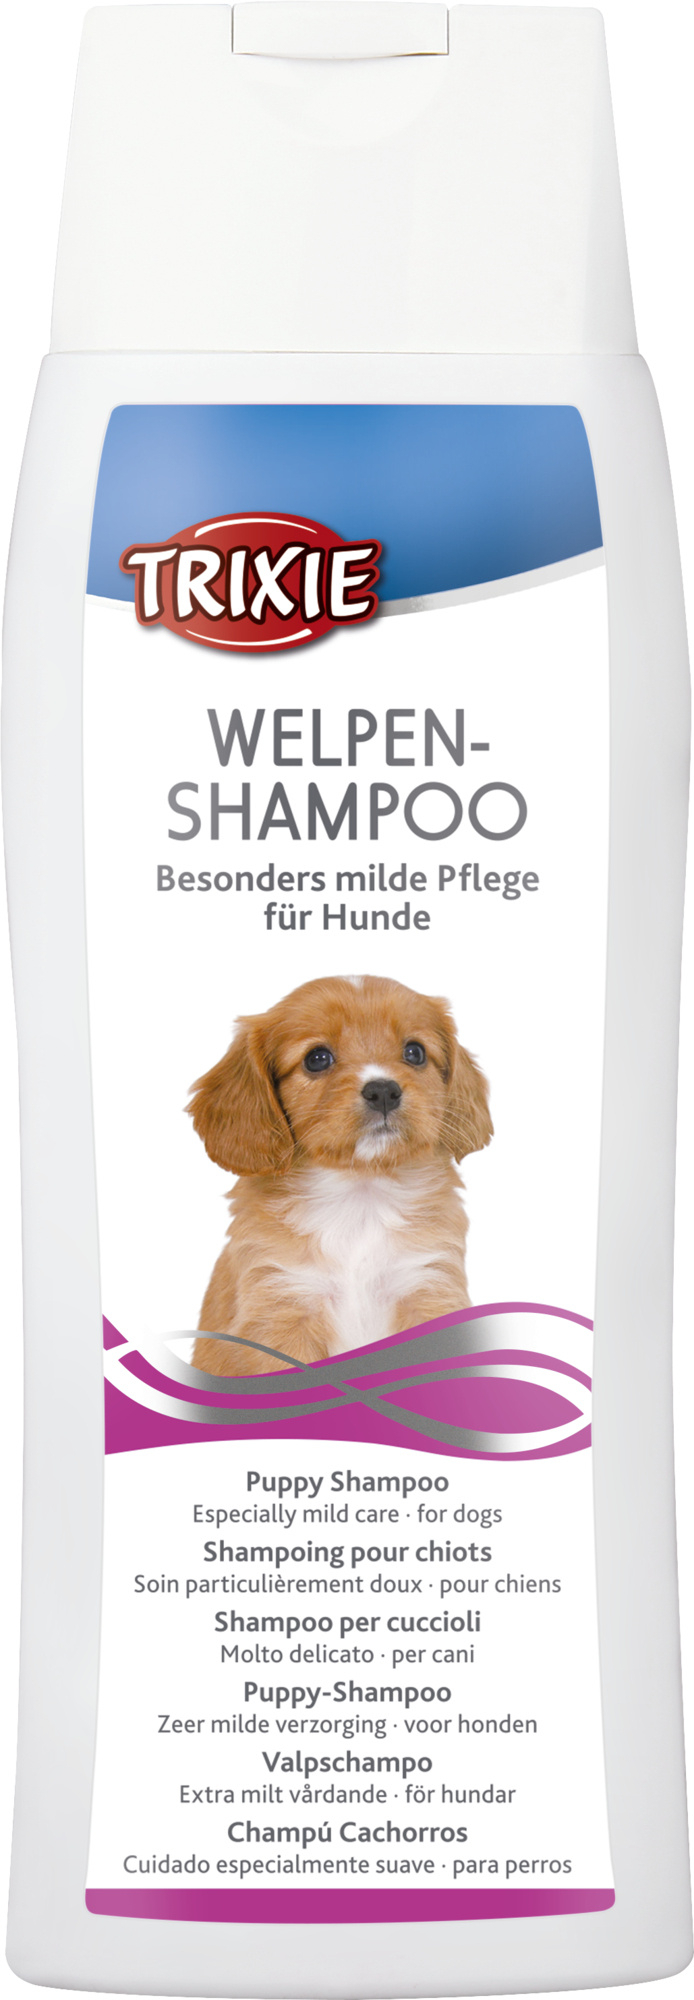 Shampoo voor puppy's